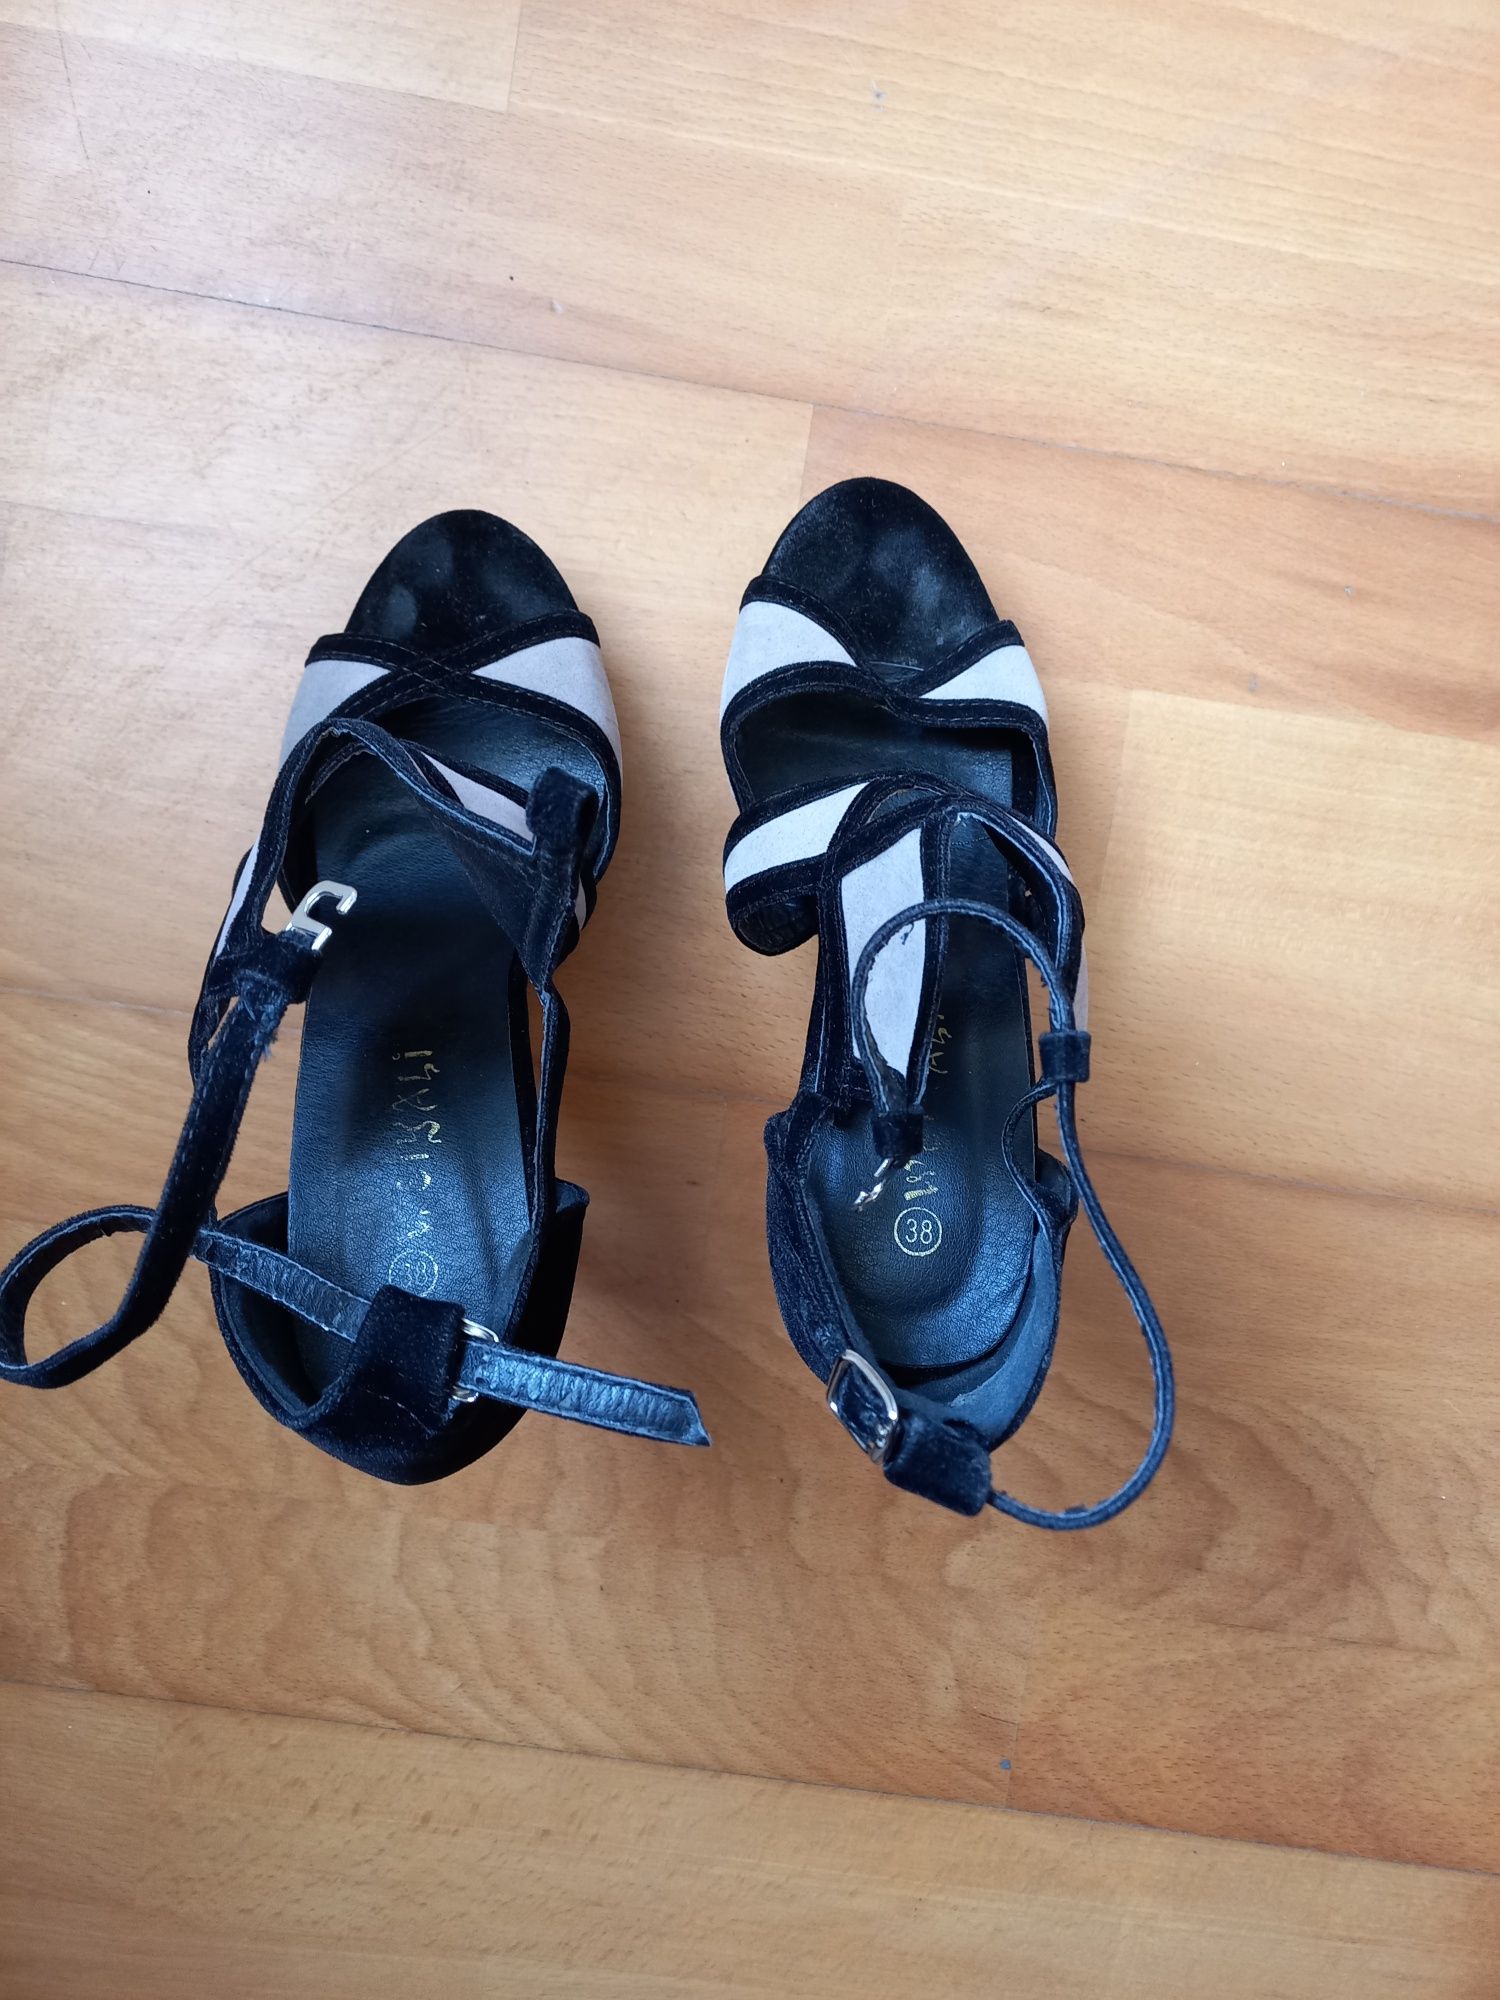 Sandálias de veludo preto e cinza. Tamanho 38. Usadas uma vez